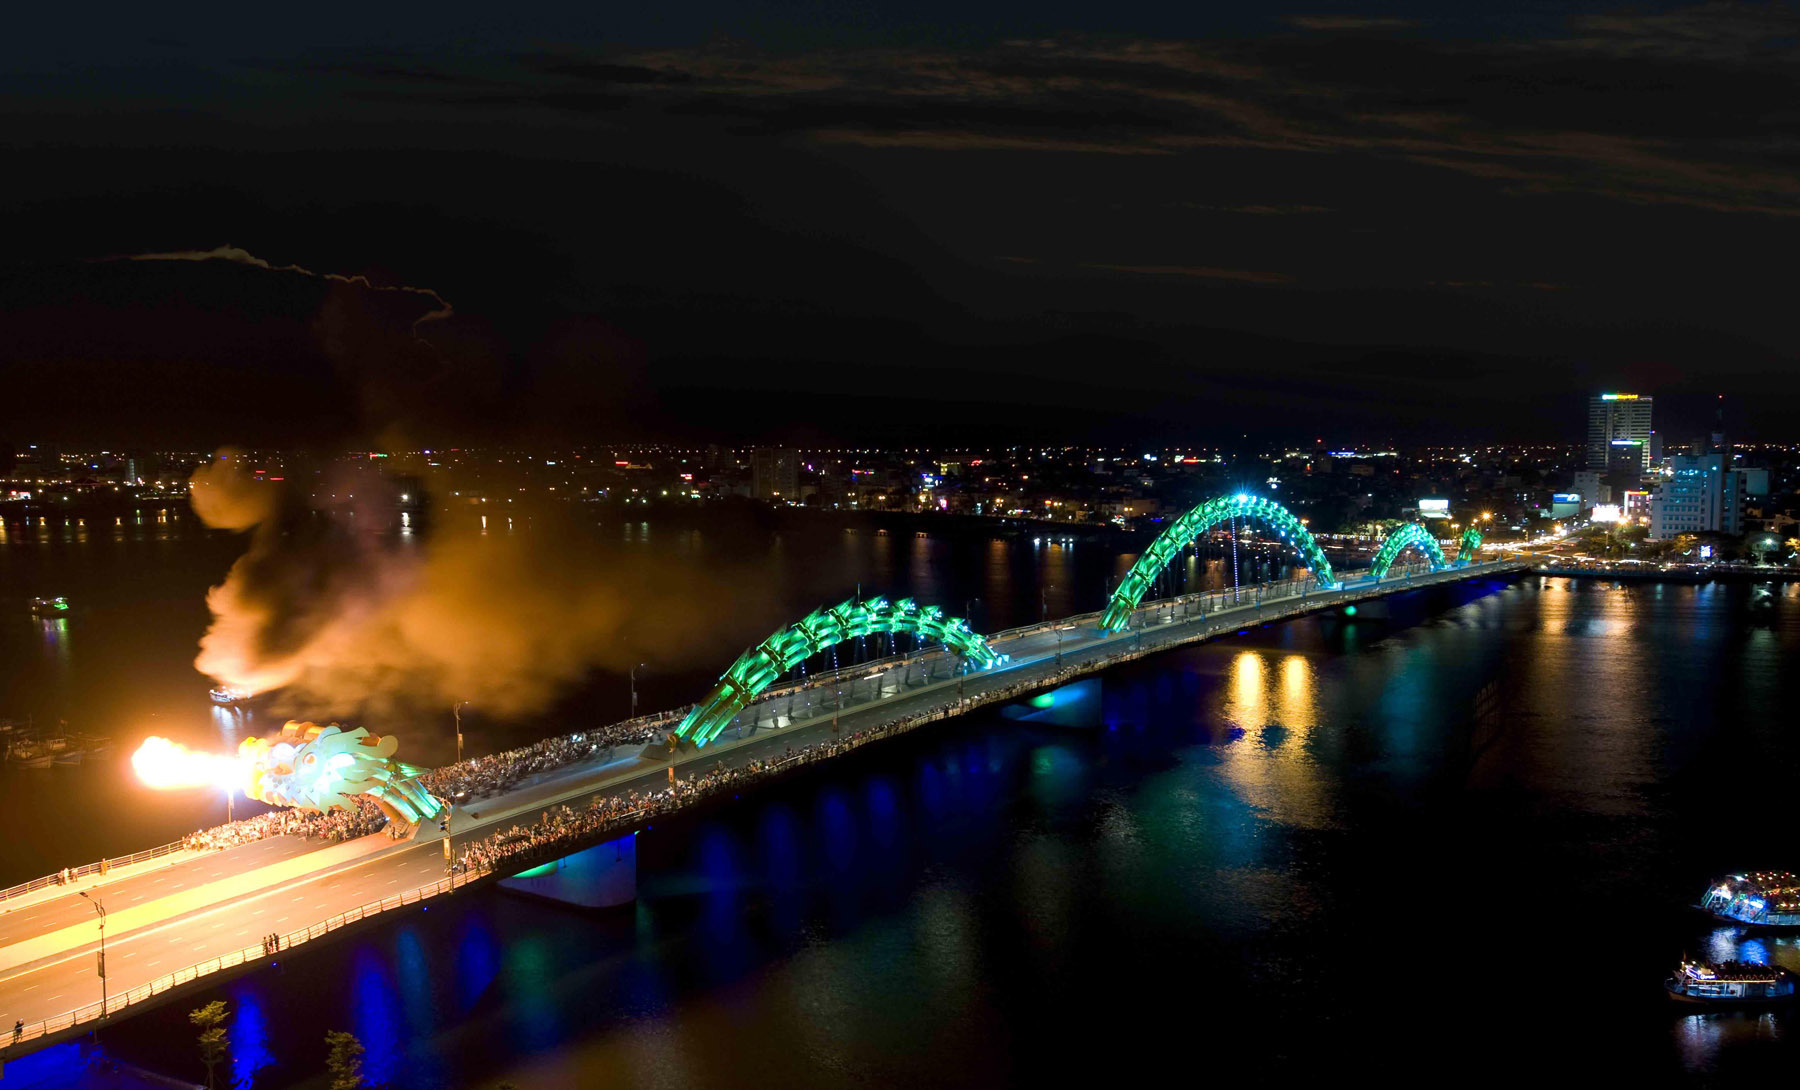 Kinh nghiệm check-in Cầu Rồng Đà Nẵng - 1 trong 20 cây cầu ấn tượng nhất thế giới 5